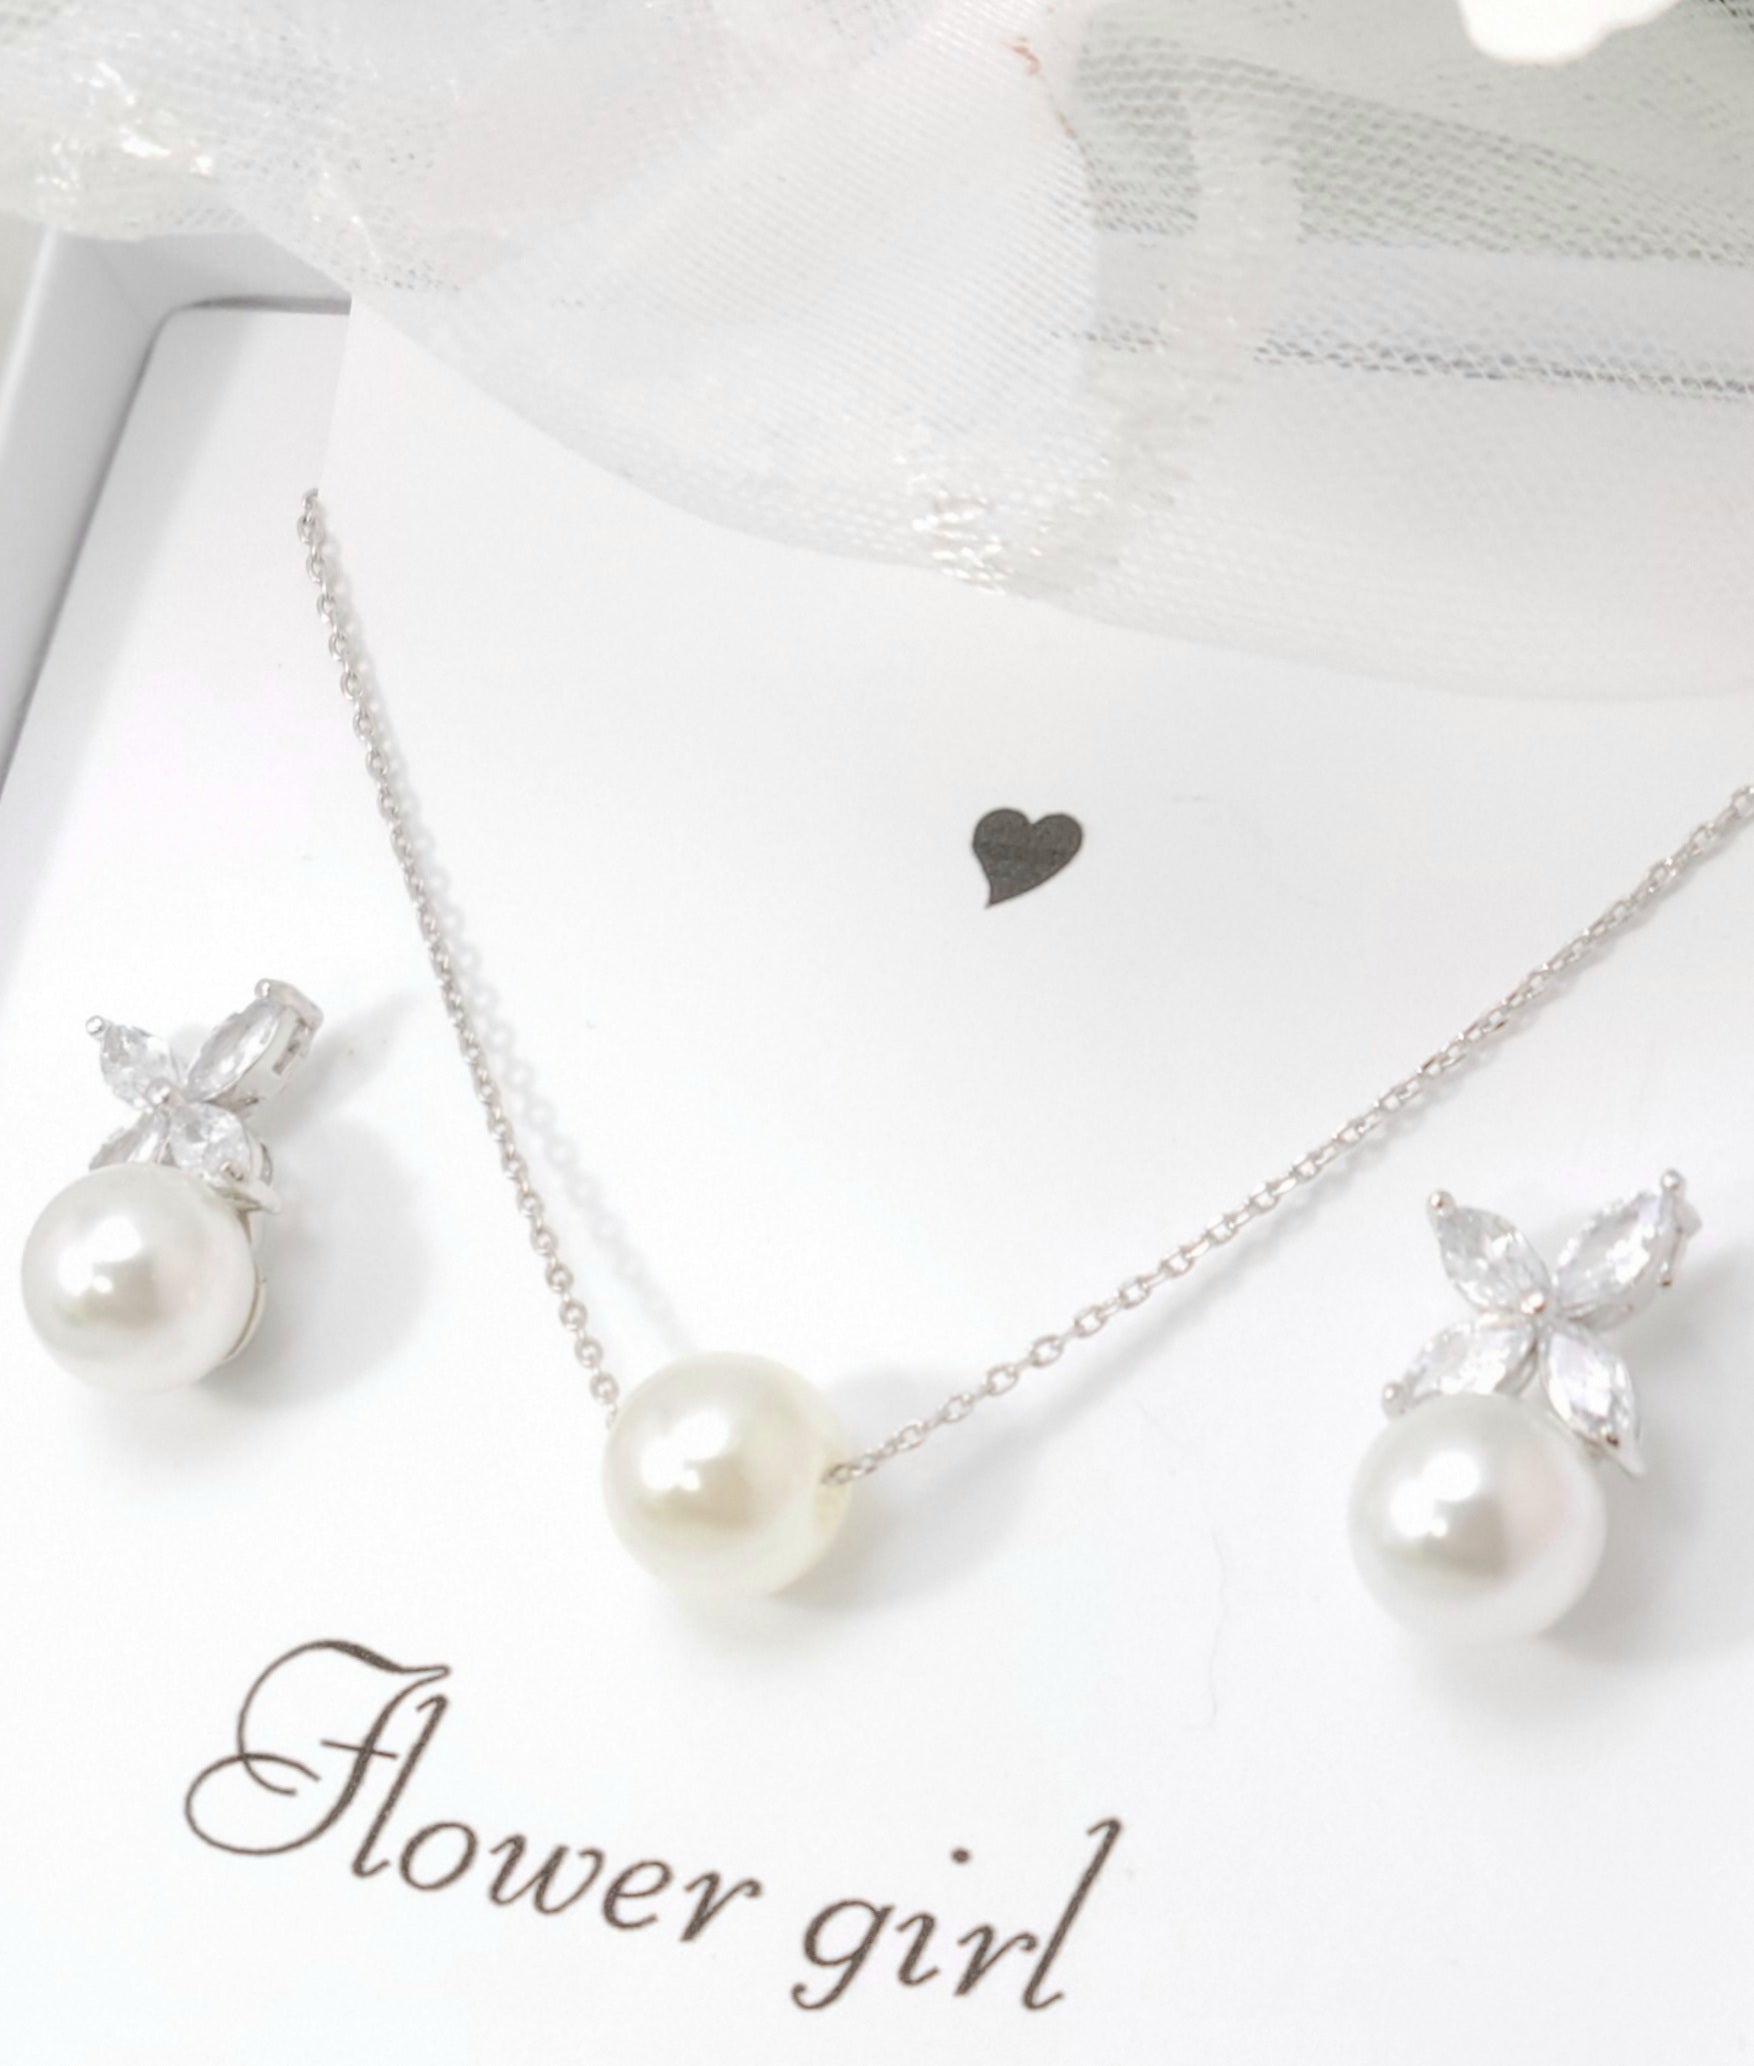 Flower girl jewelry